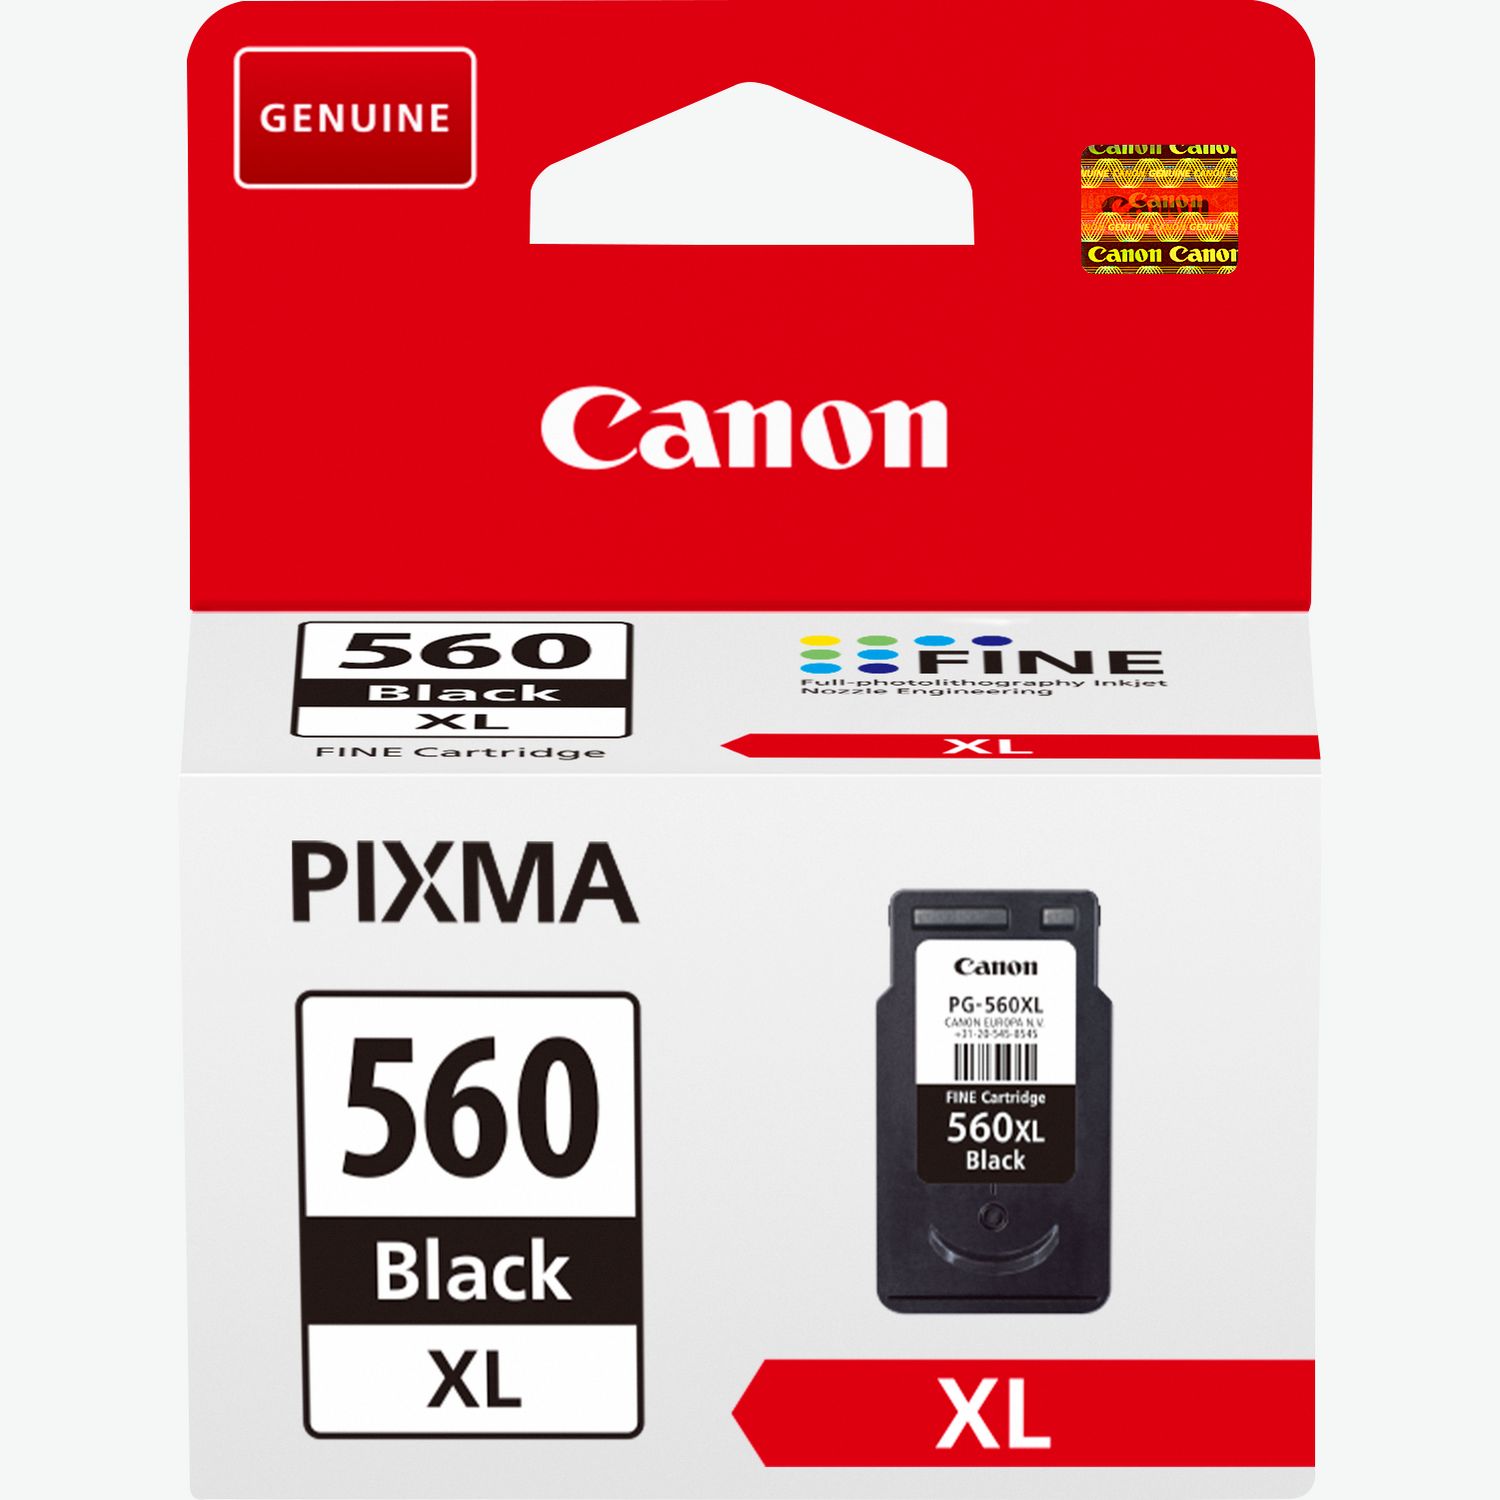 Coffret Canon Photo Cube incluant les cartouches d'encre PG-560 et